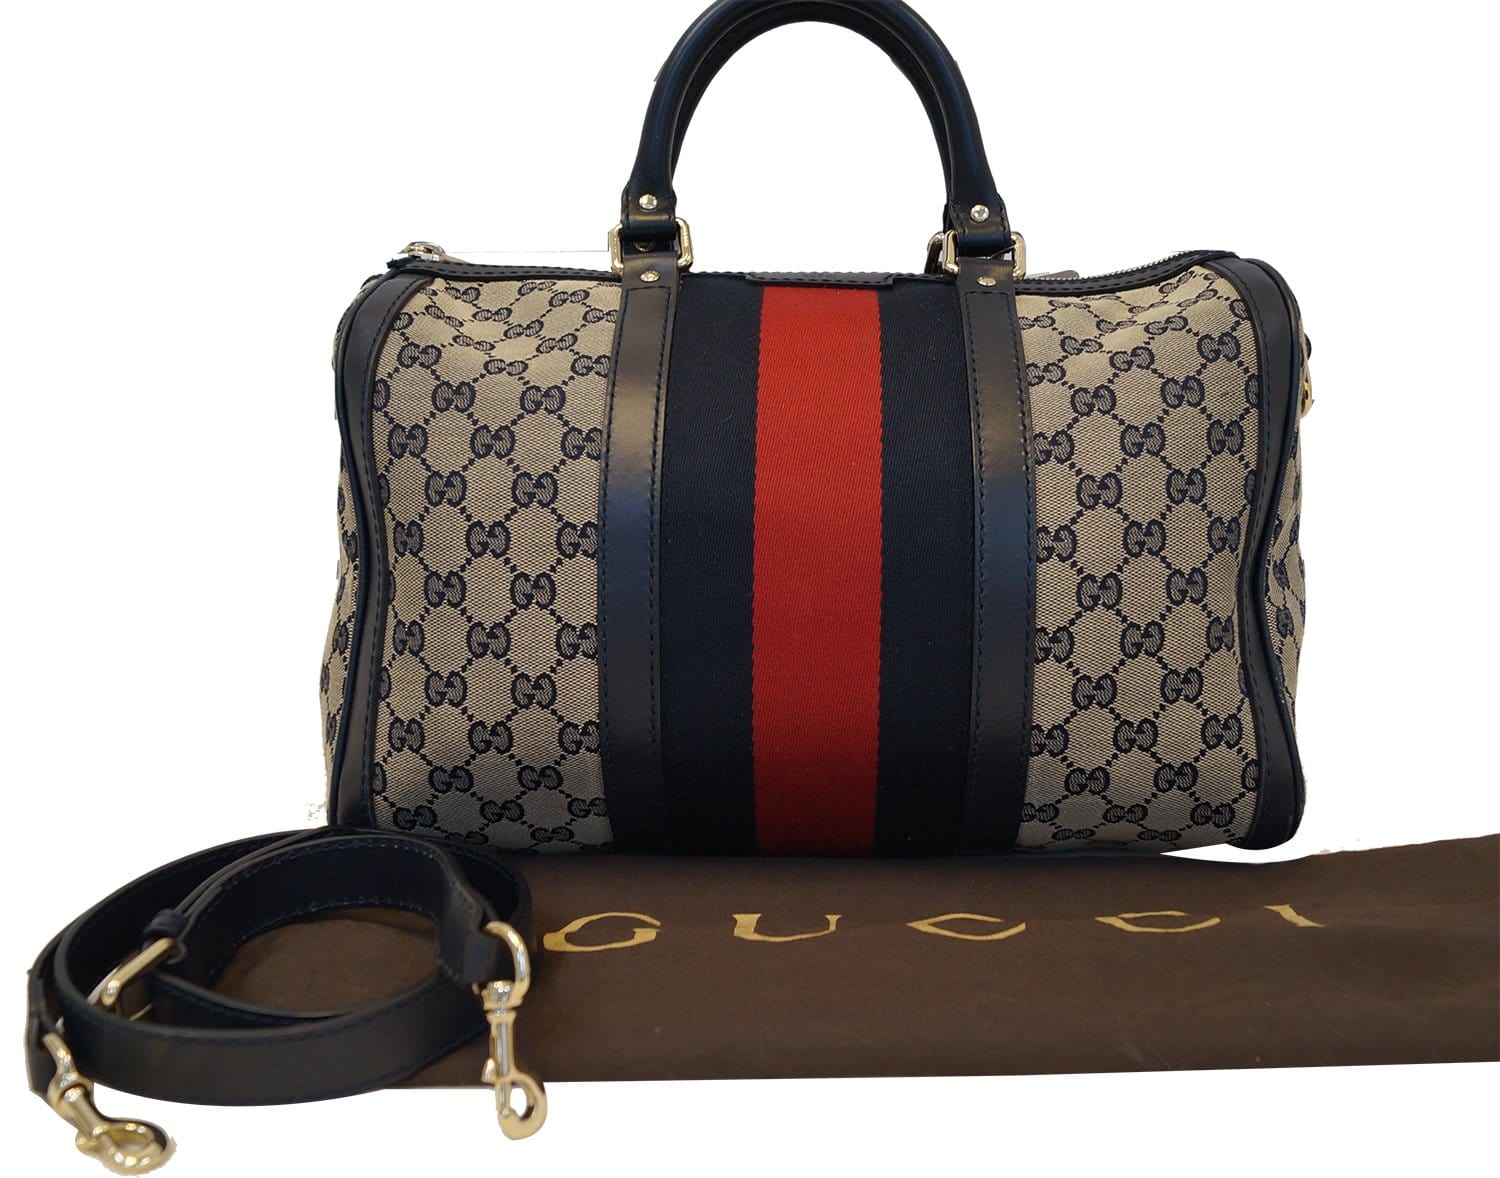 Authentic Gucci Boston Bag #GUCCIBOSTONBag 